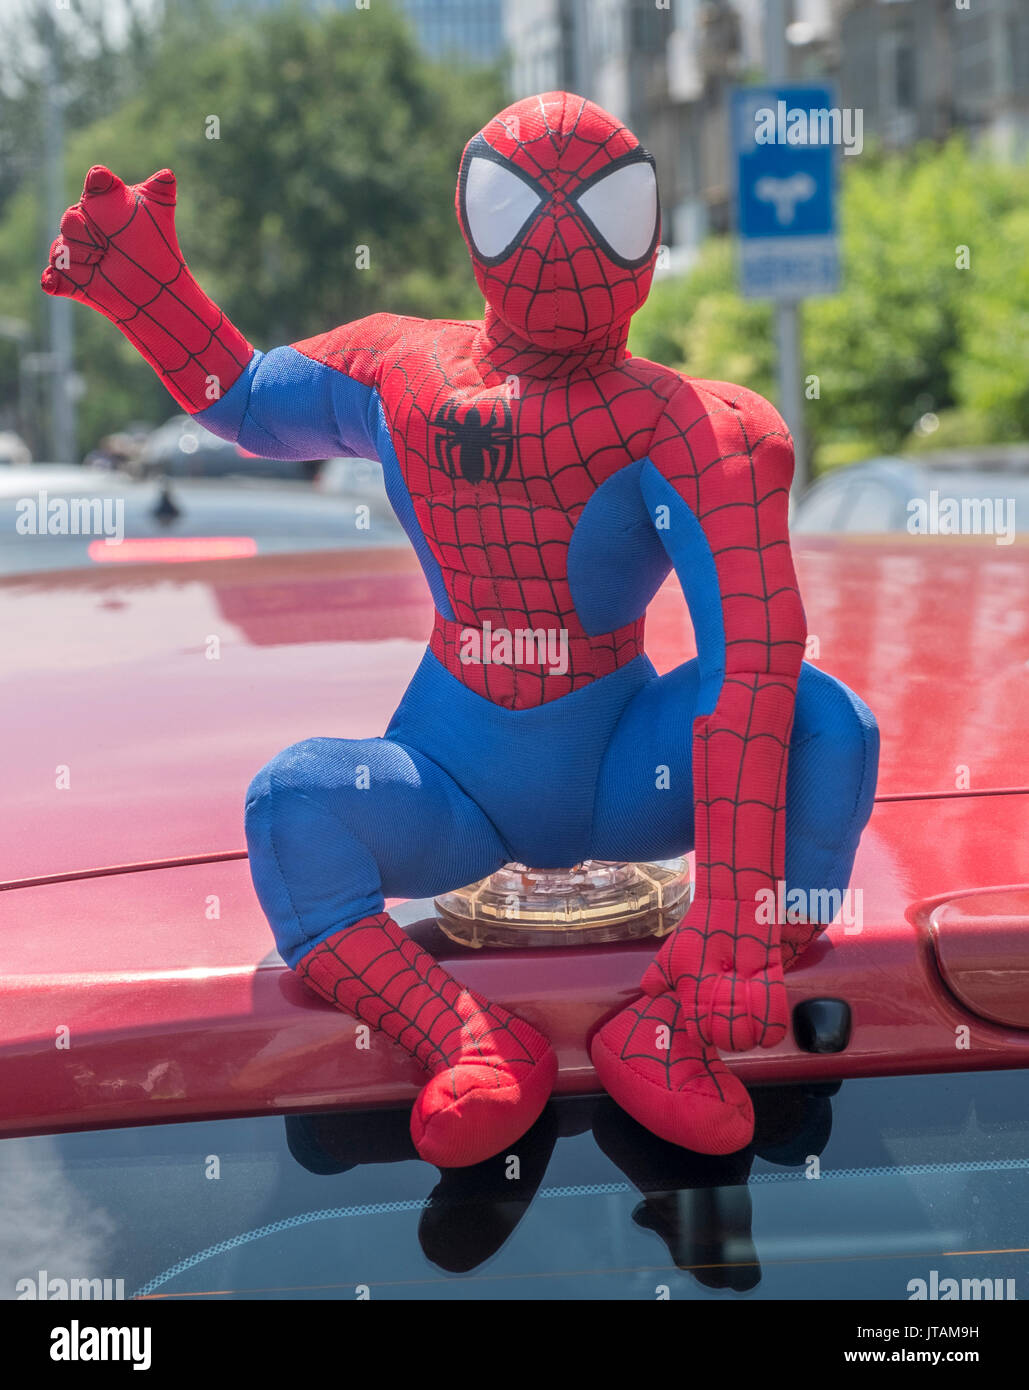 Spider-Man Spielzeug ist auf ein eigenes Auto in Peking, China. 08-Aug-2017  Stockfotografie - Alamy